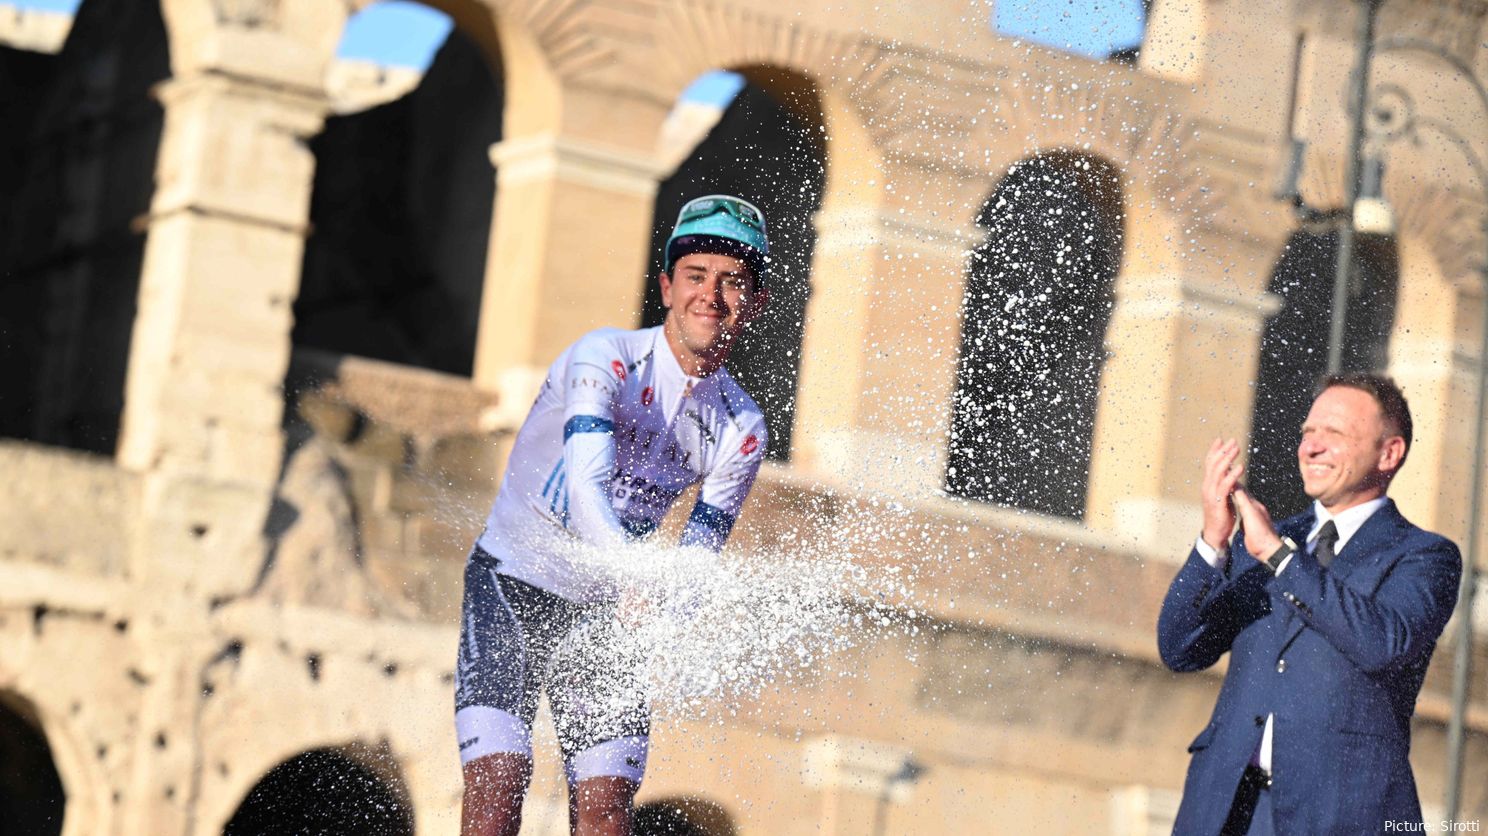 Antonio Tiberi, muy emociando con su 5º puesto en el Giro de Italia: "Es un sueño"